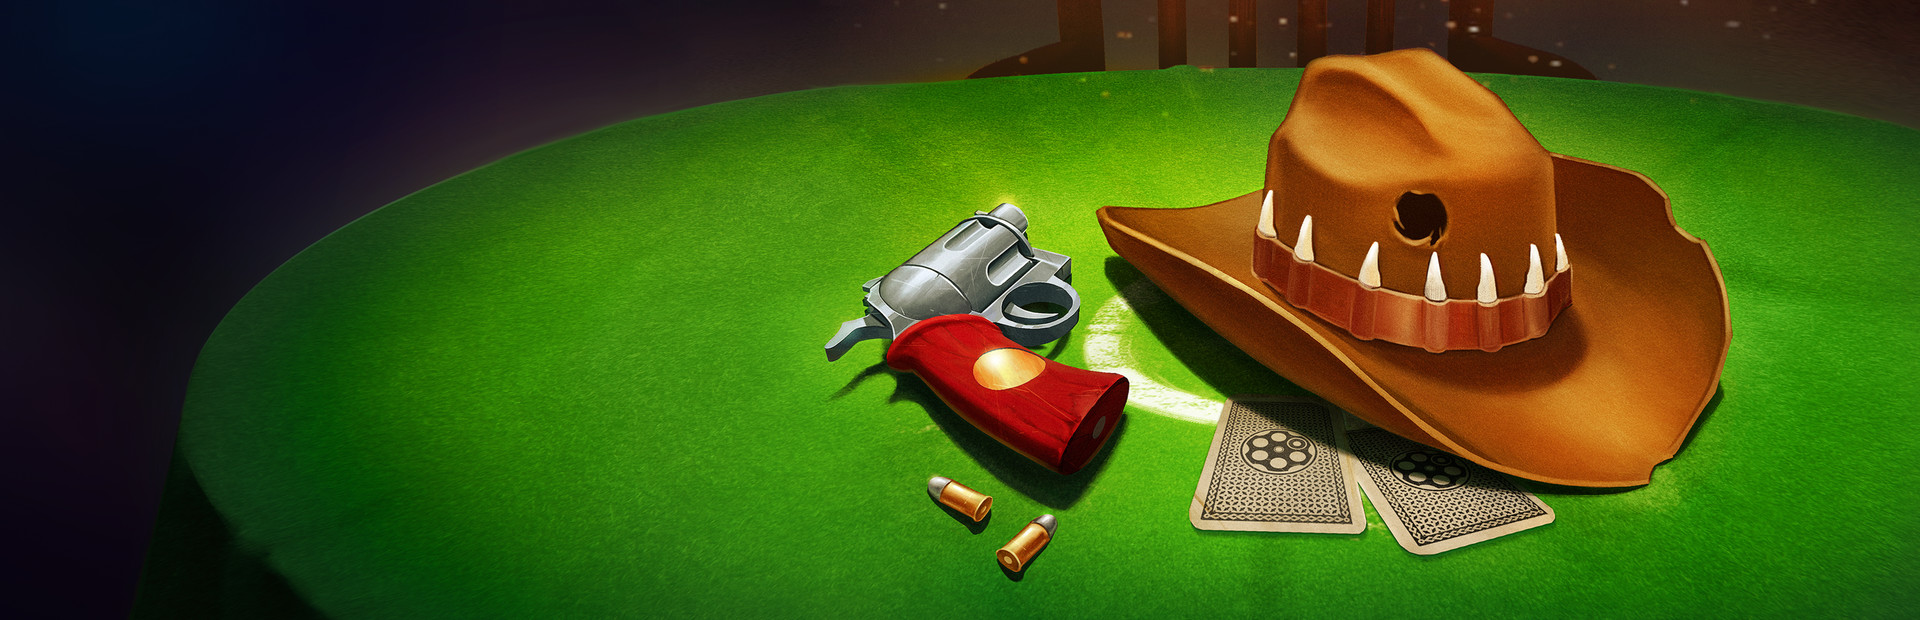 Bullet Roulette VR on Steam